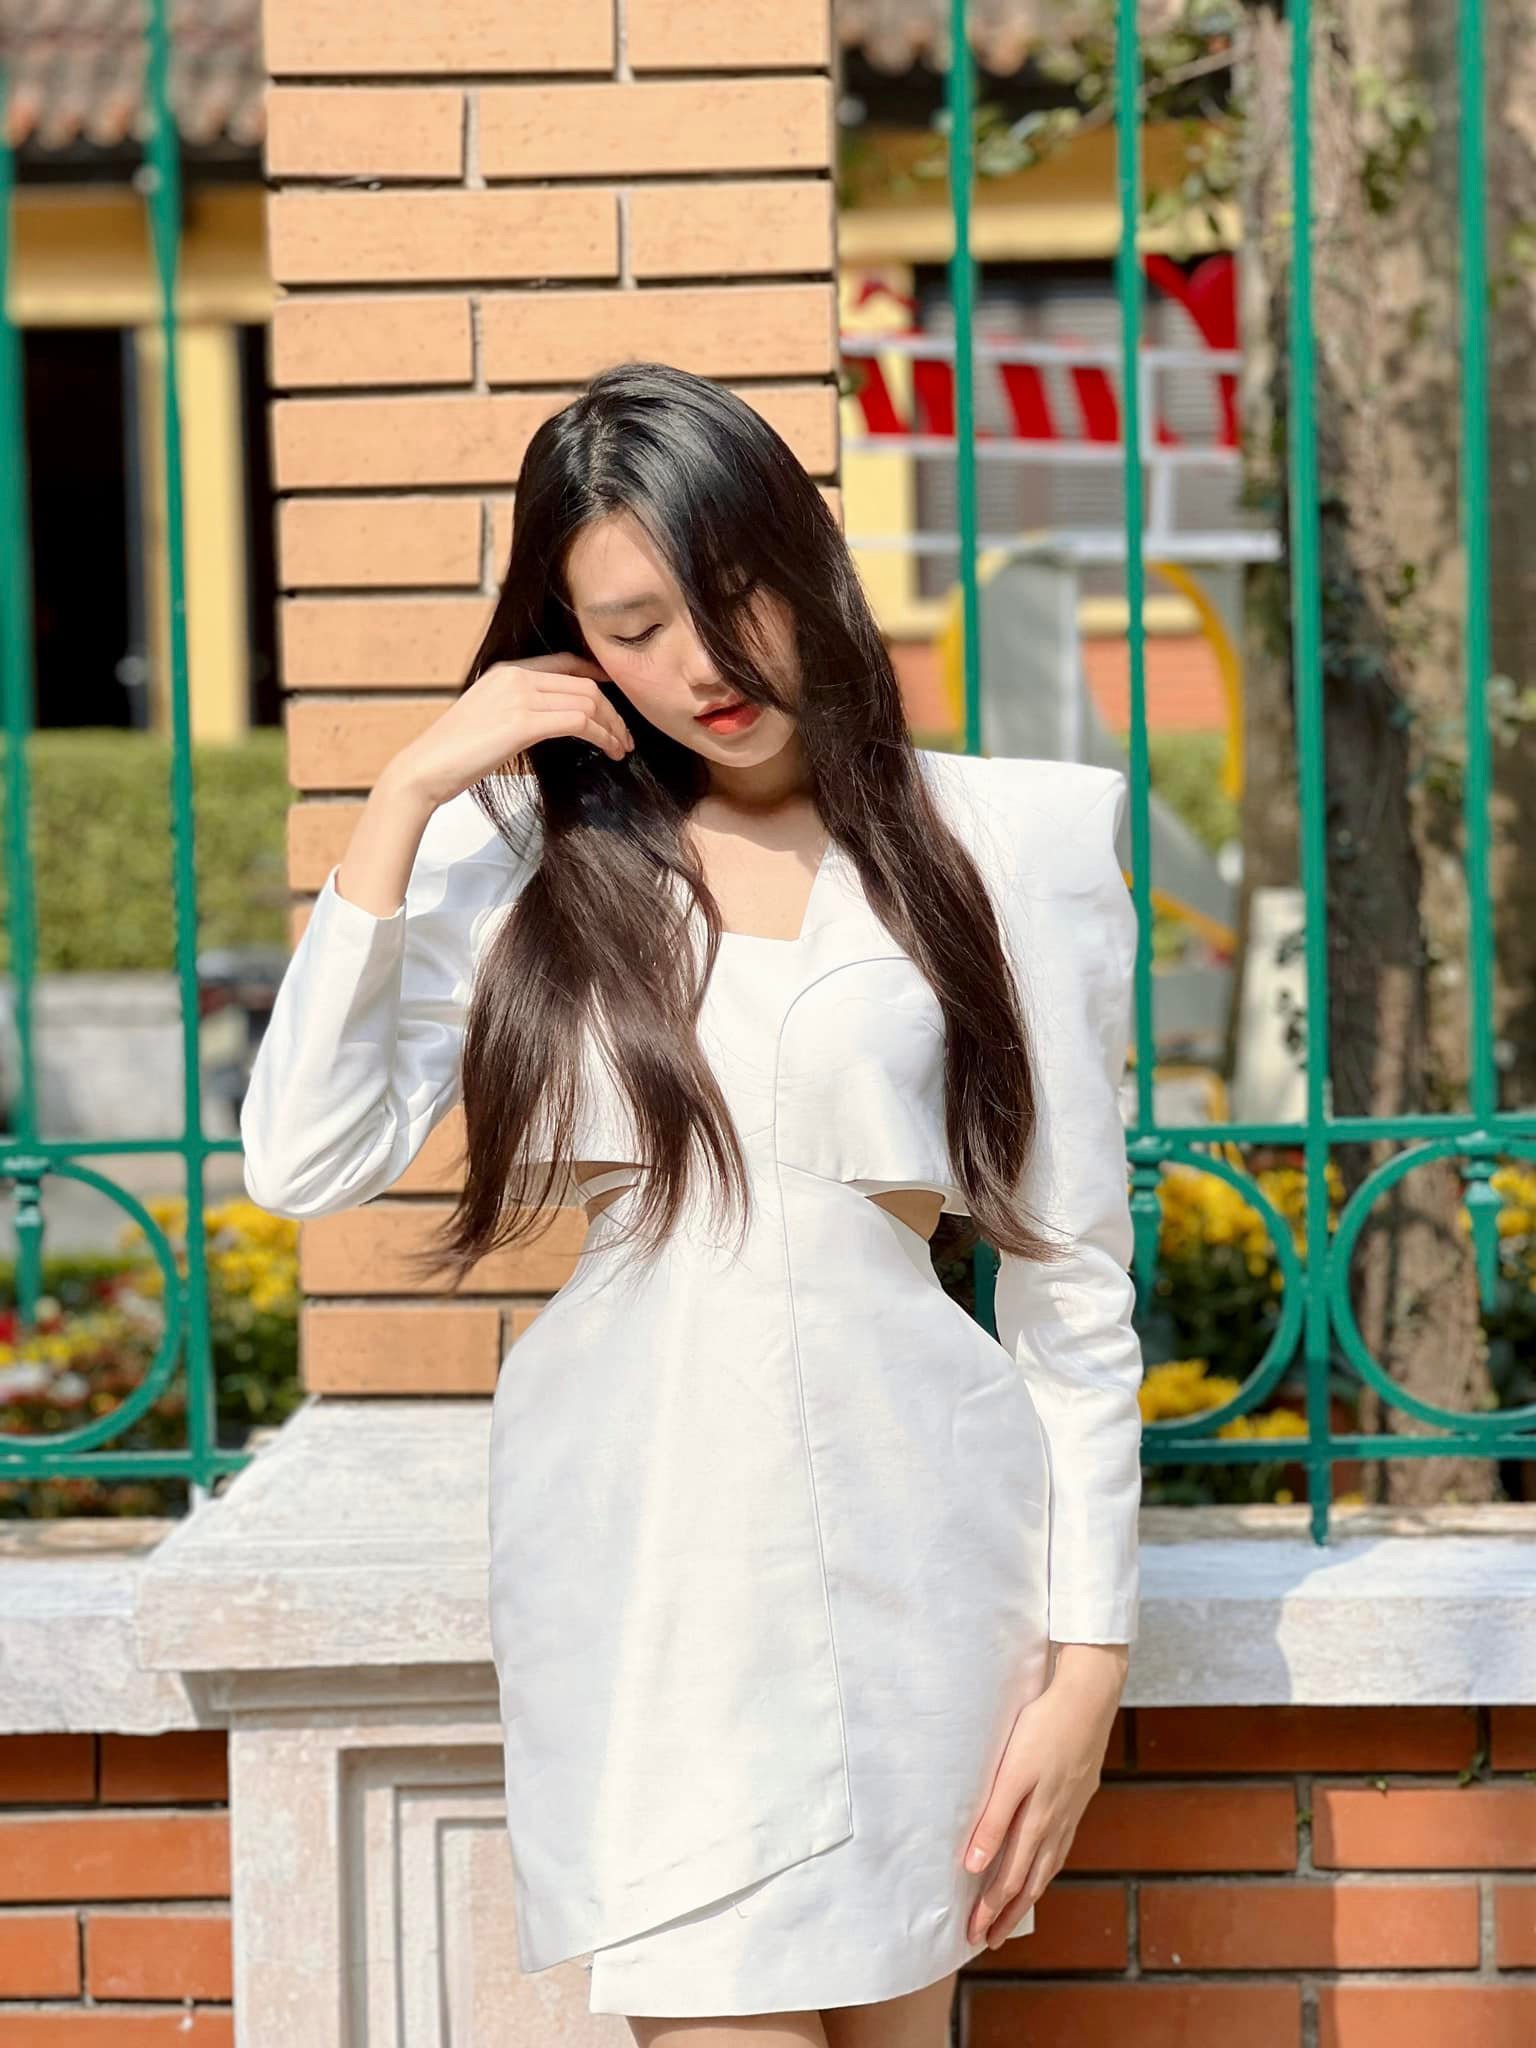 Doan Van Hau's girlfriend shows off the smallest 58cm waist in Vietnamese beauty village - 6